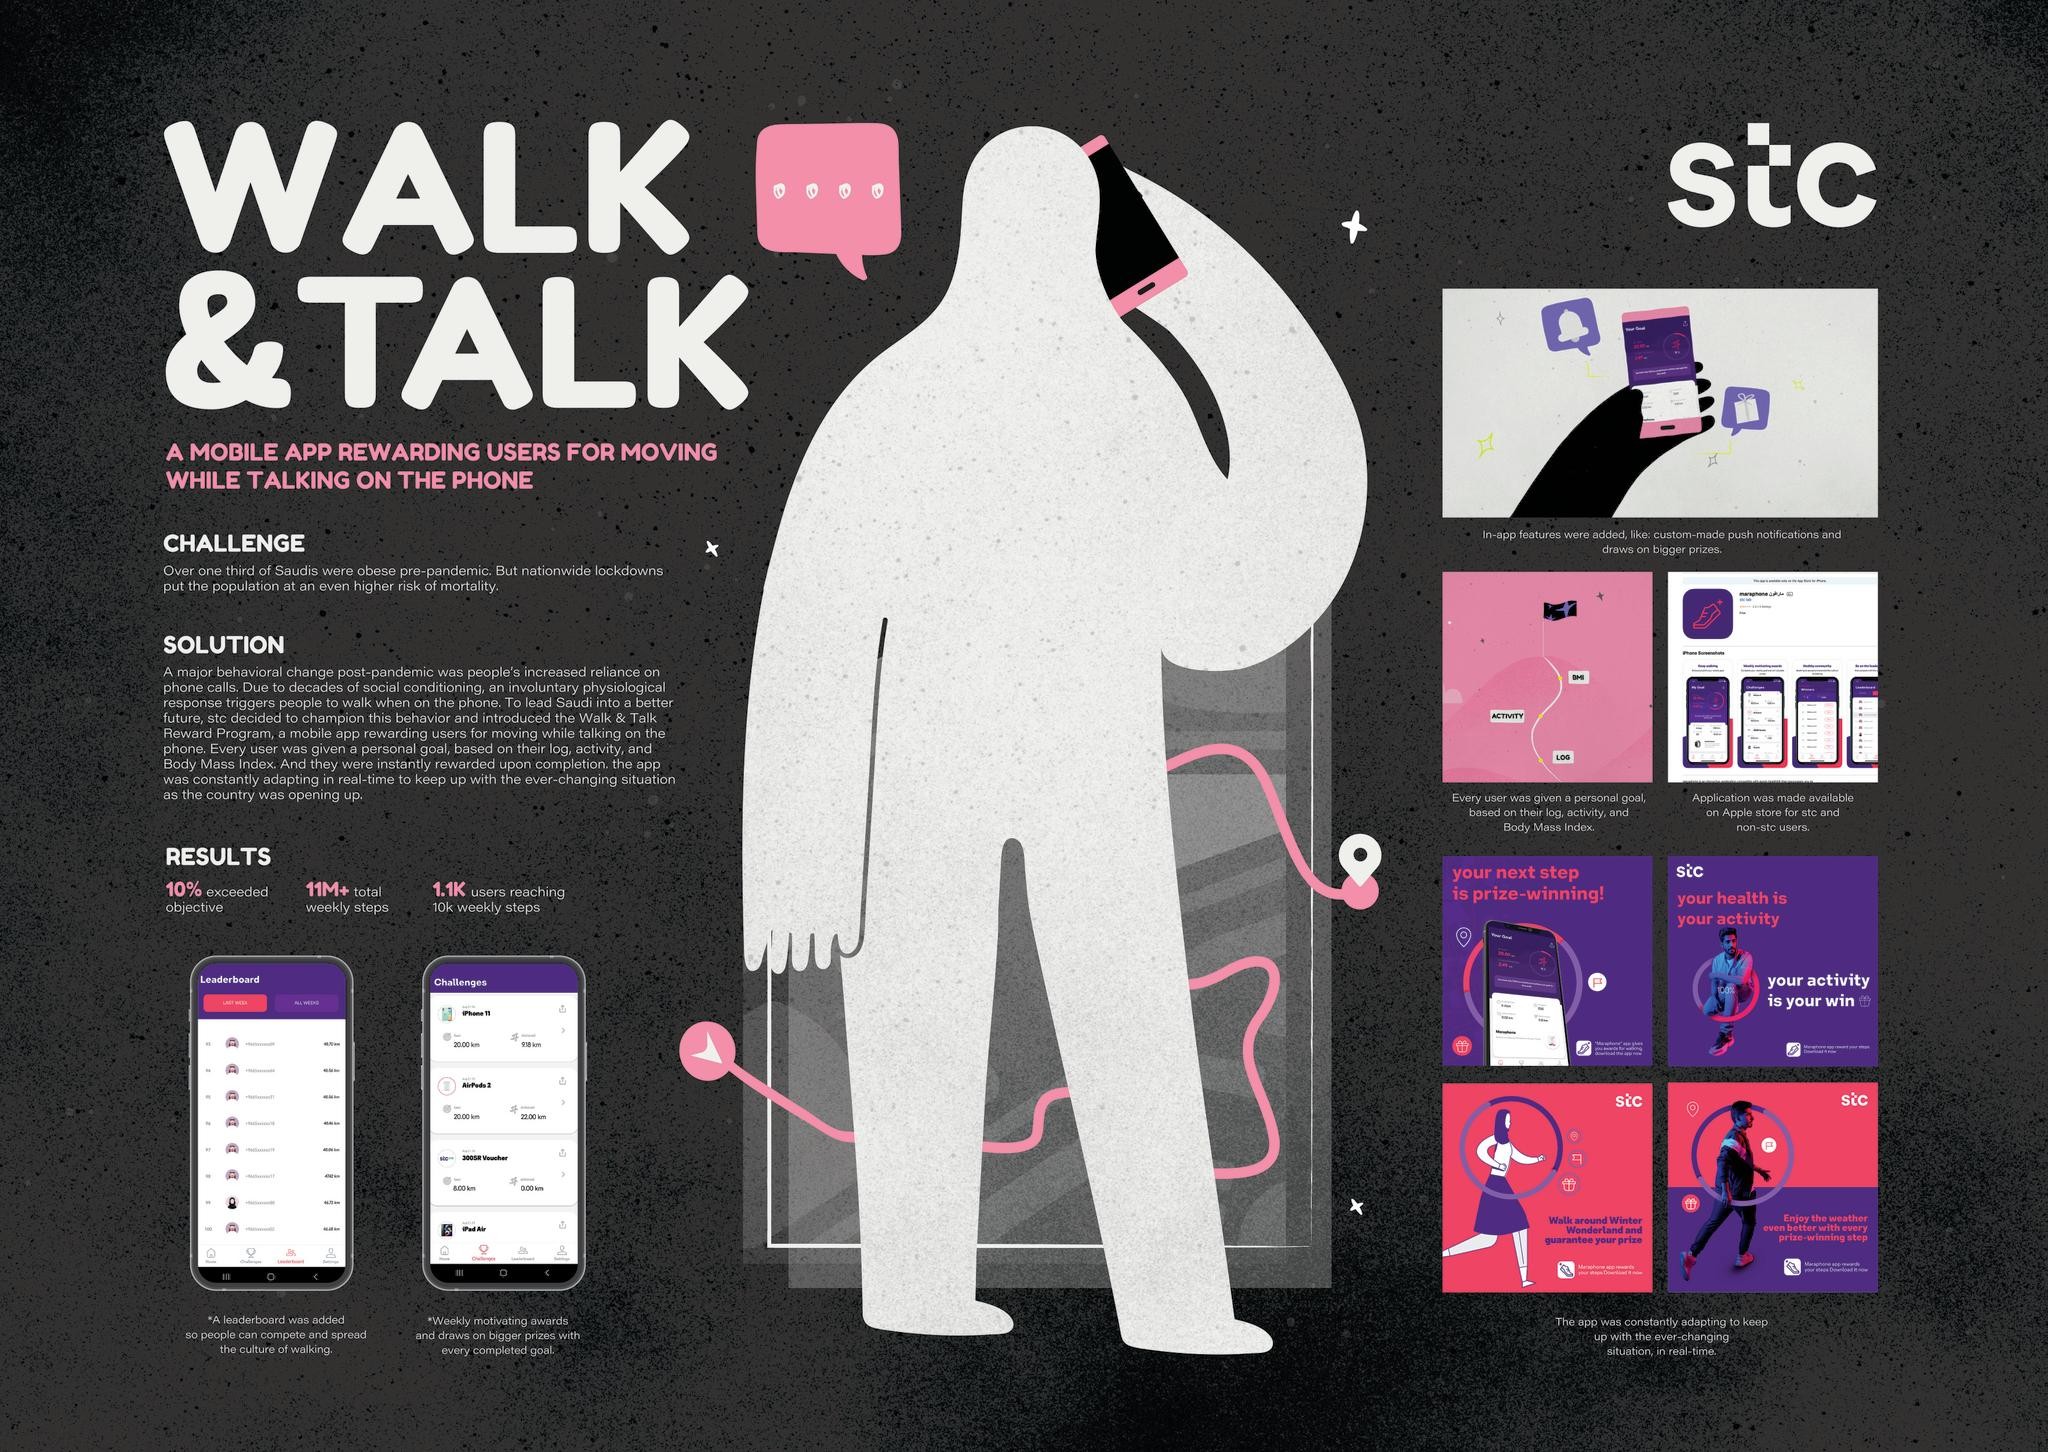 Walk & Talk